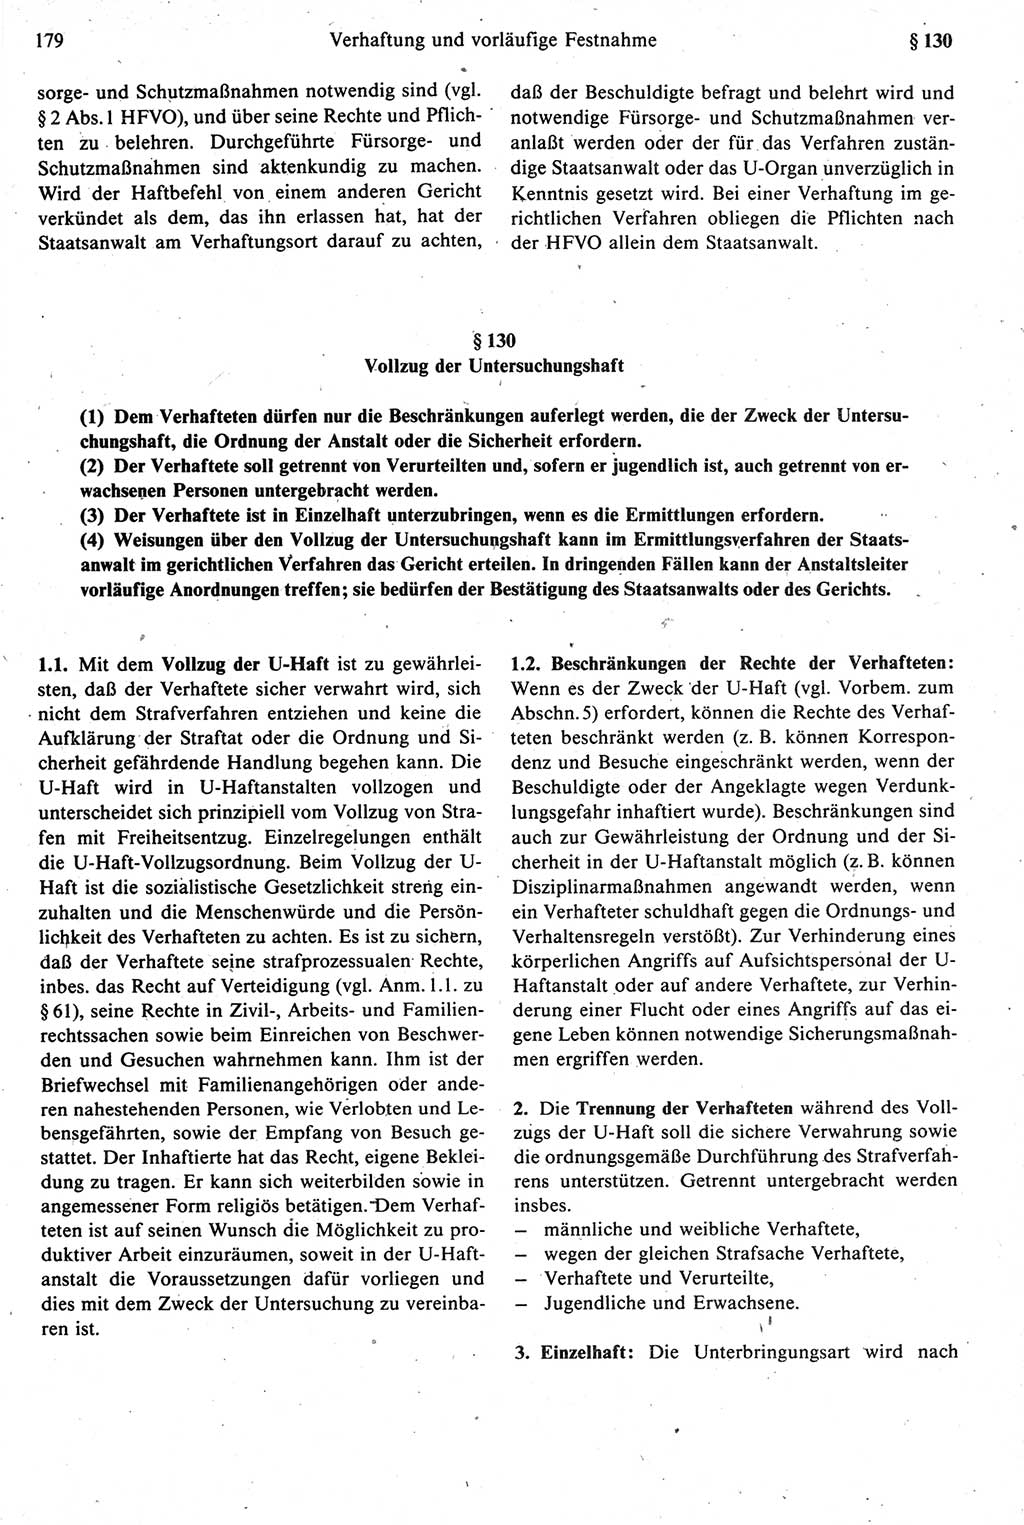 Strafprozeßrecht der DDR [Deutsche Demokratische Republik], Kommentar zur Strafprozeßordnung (StPO) 1987, Seite 179 (Strafprozeßr. DDR Komm. StPO 1987, S. 179)